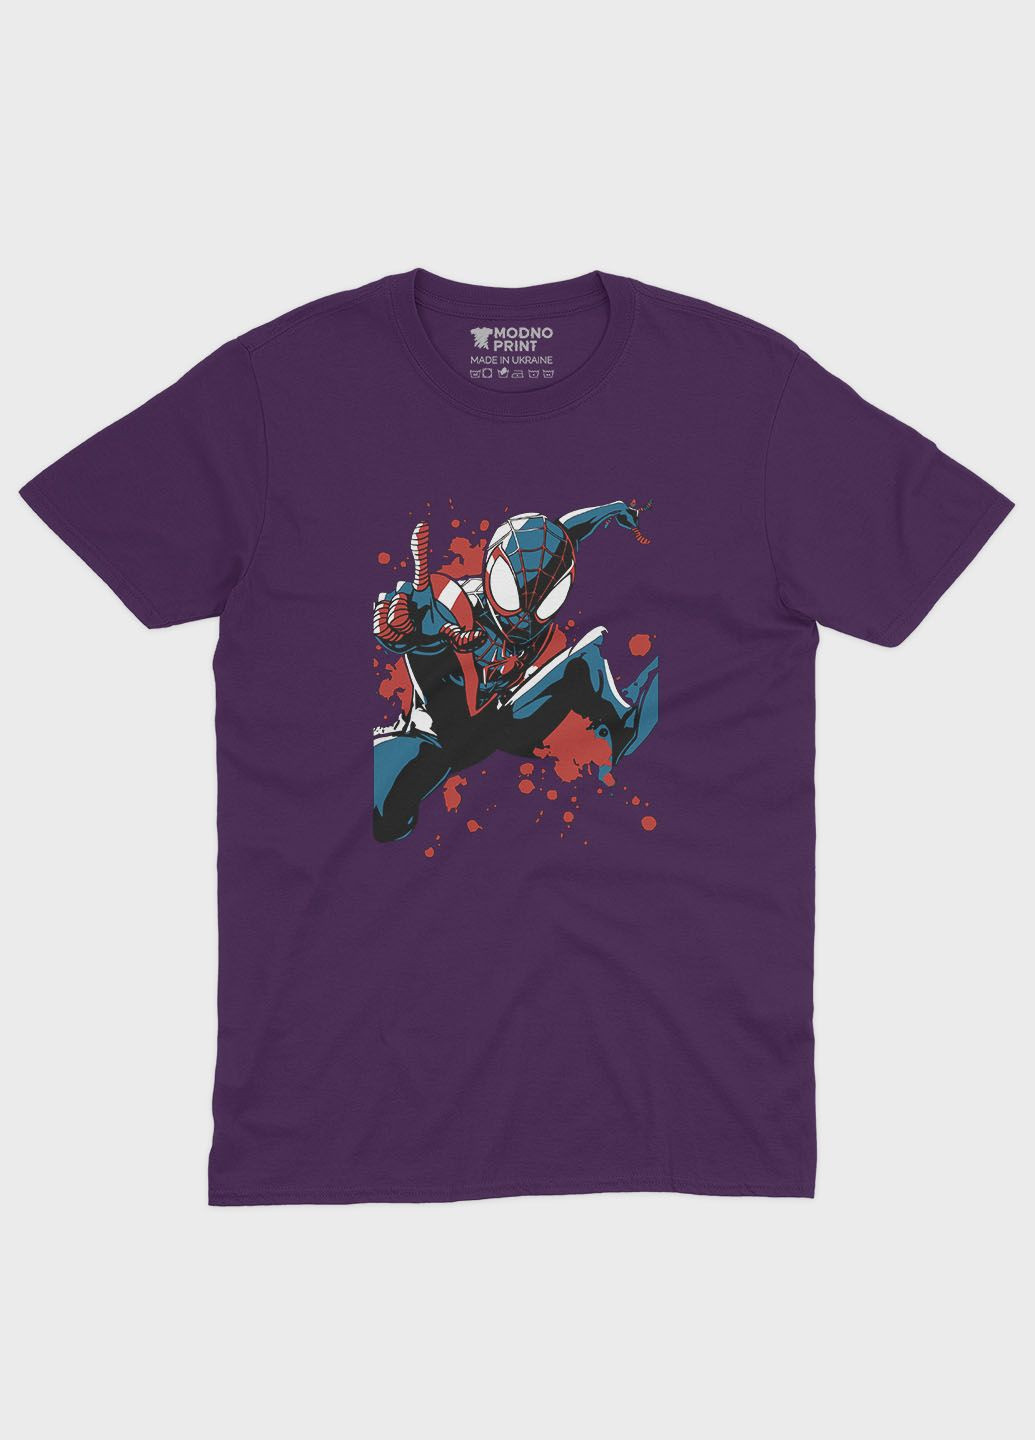 Фиолетовая демисезонная футболка для девочки с принтом супергероя - человек-паук (ts001-1-dby-006-014-063-g) Modno